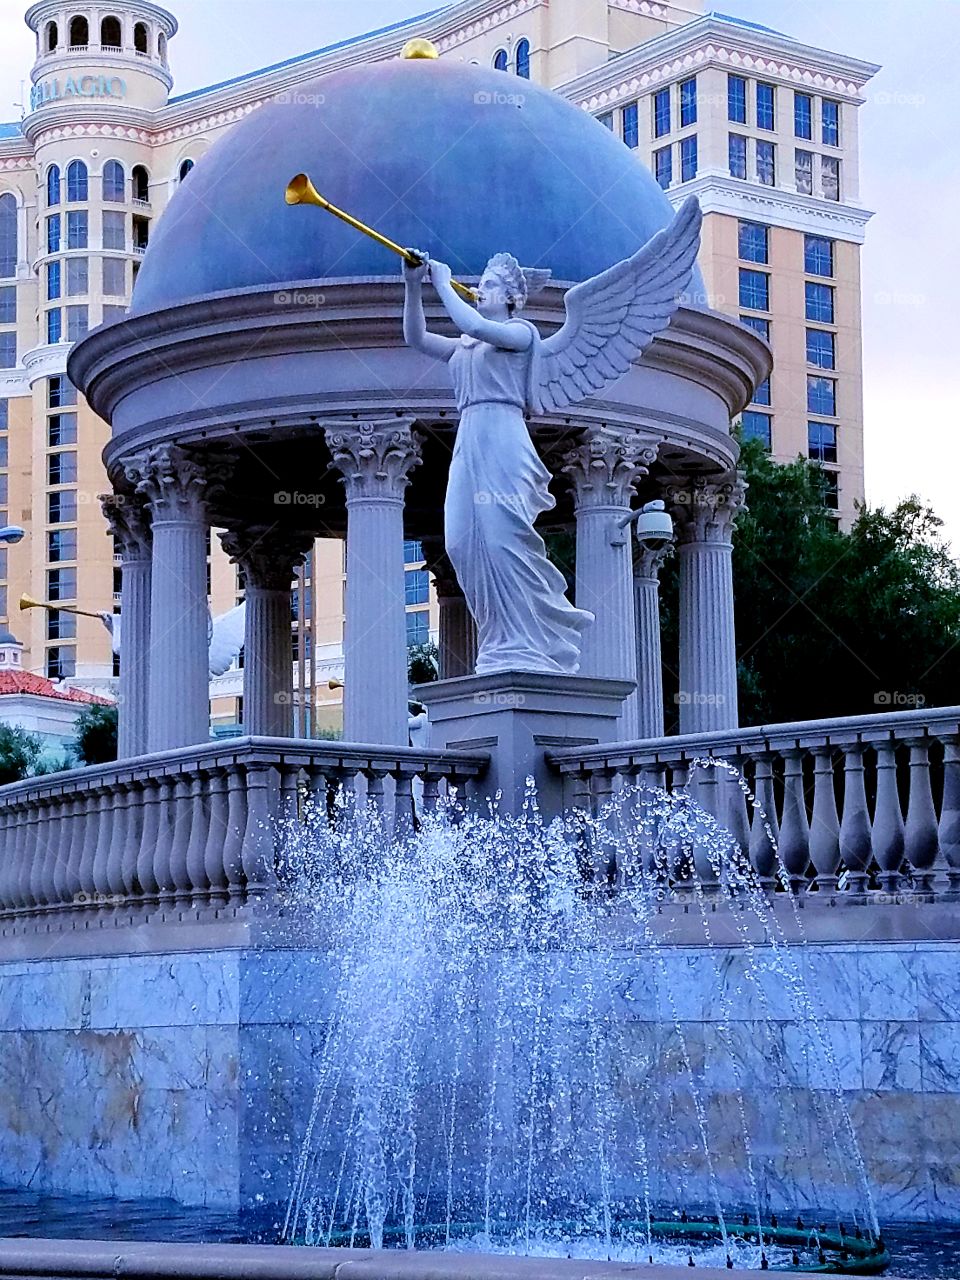 Caesar's Palace/Las Vegas